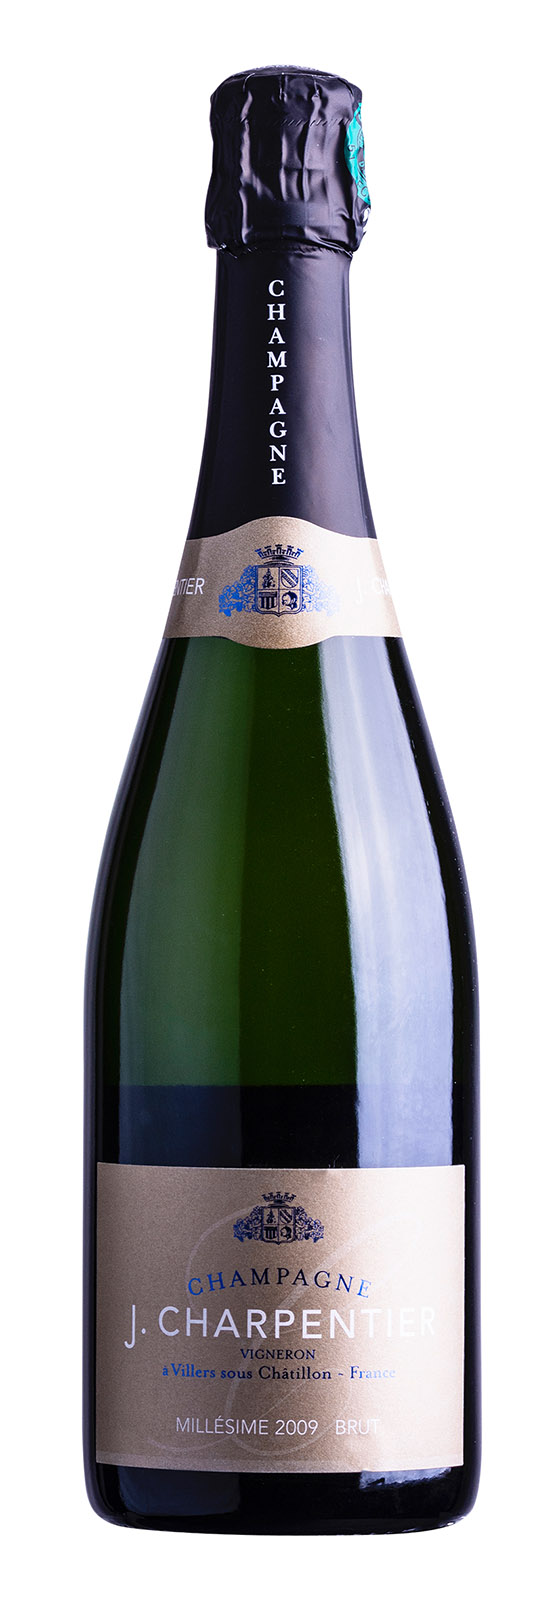 Champagne AOC Millésimé Brut 2009